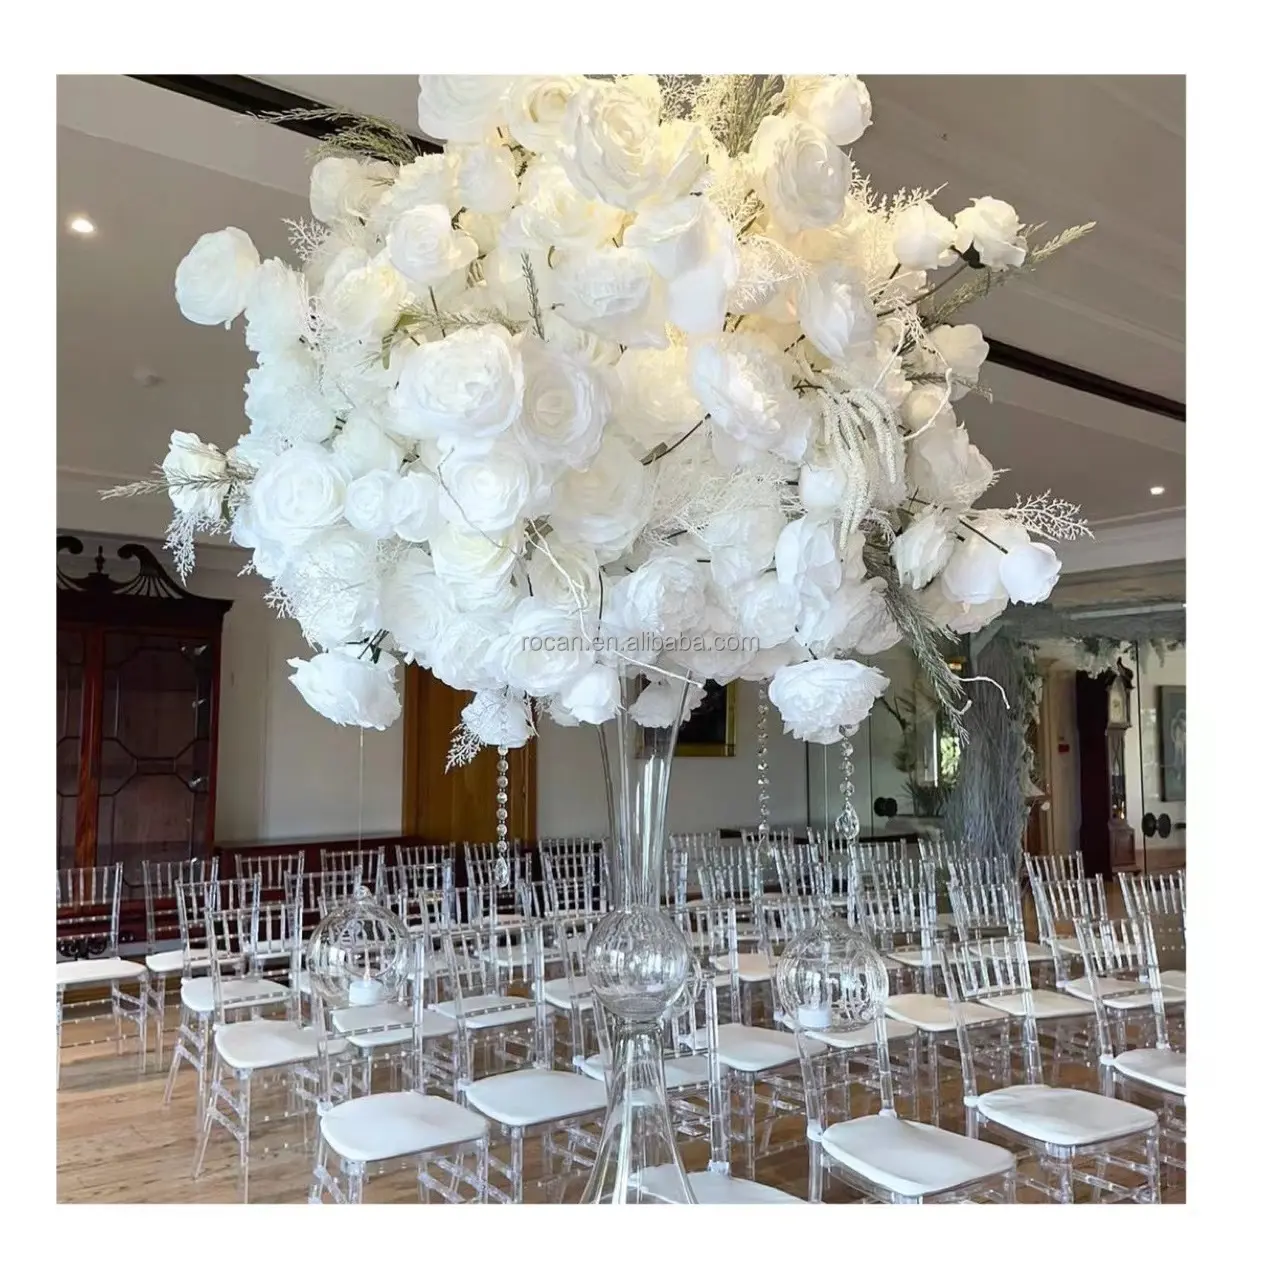 Boule de fleur artificielle blanche pour centre de table de mariage, prix de gros